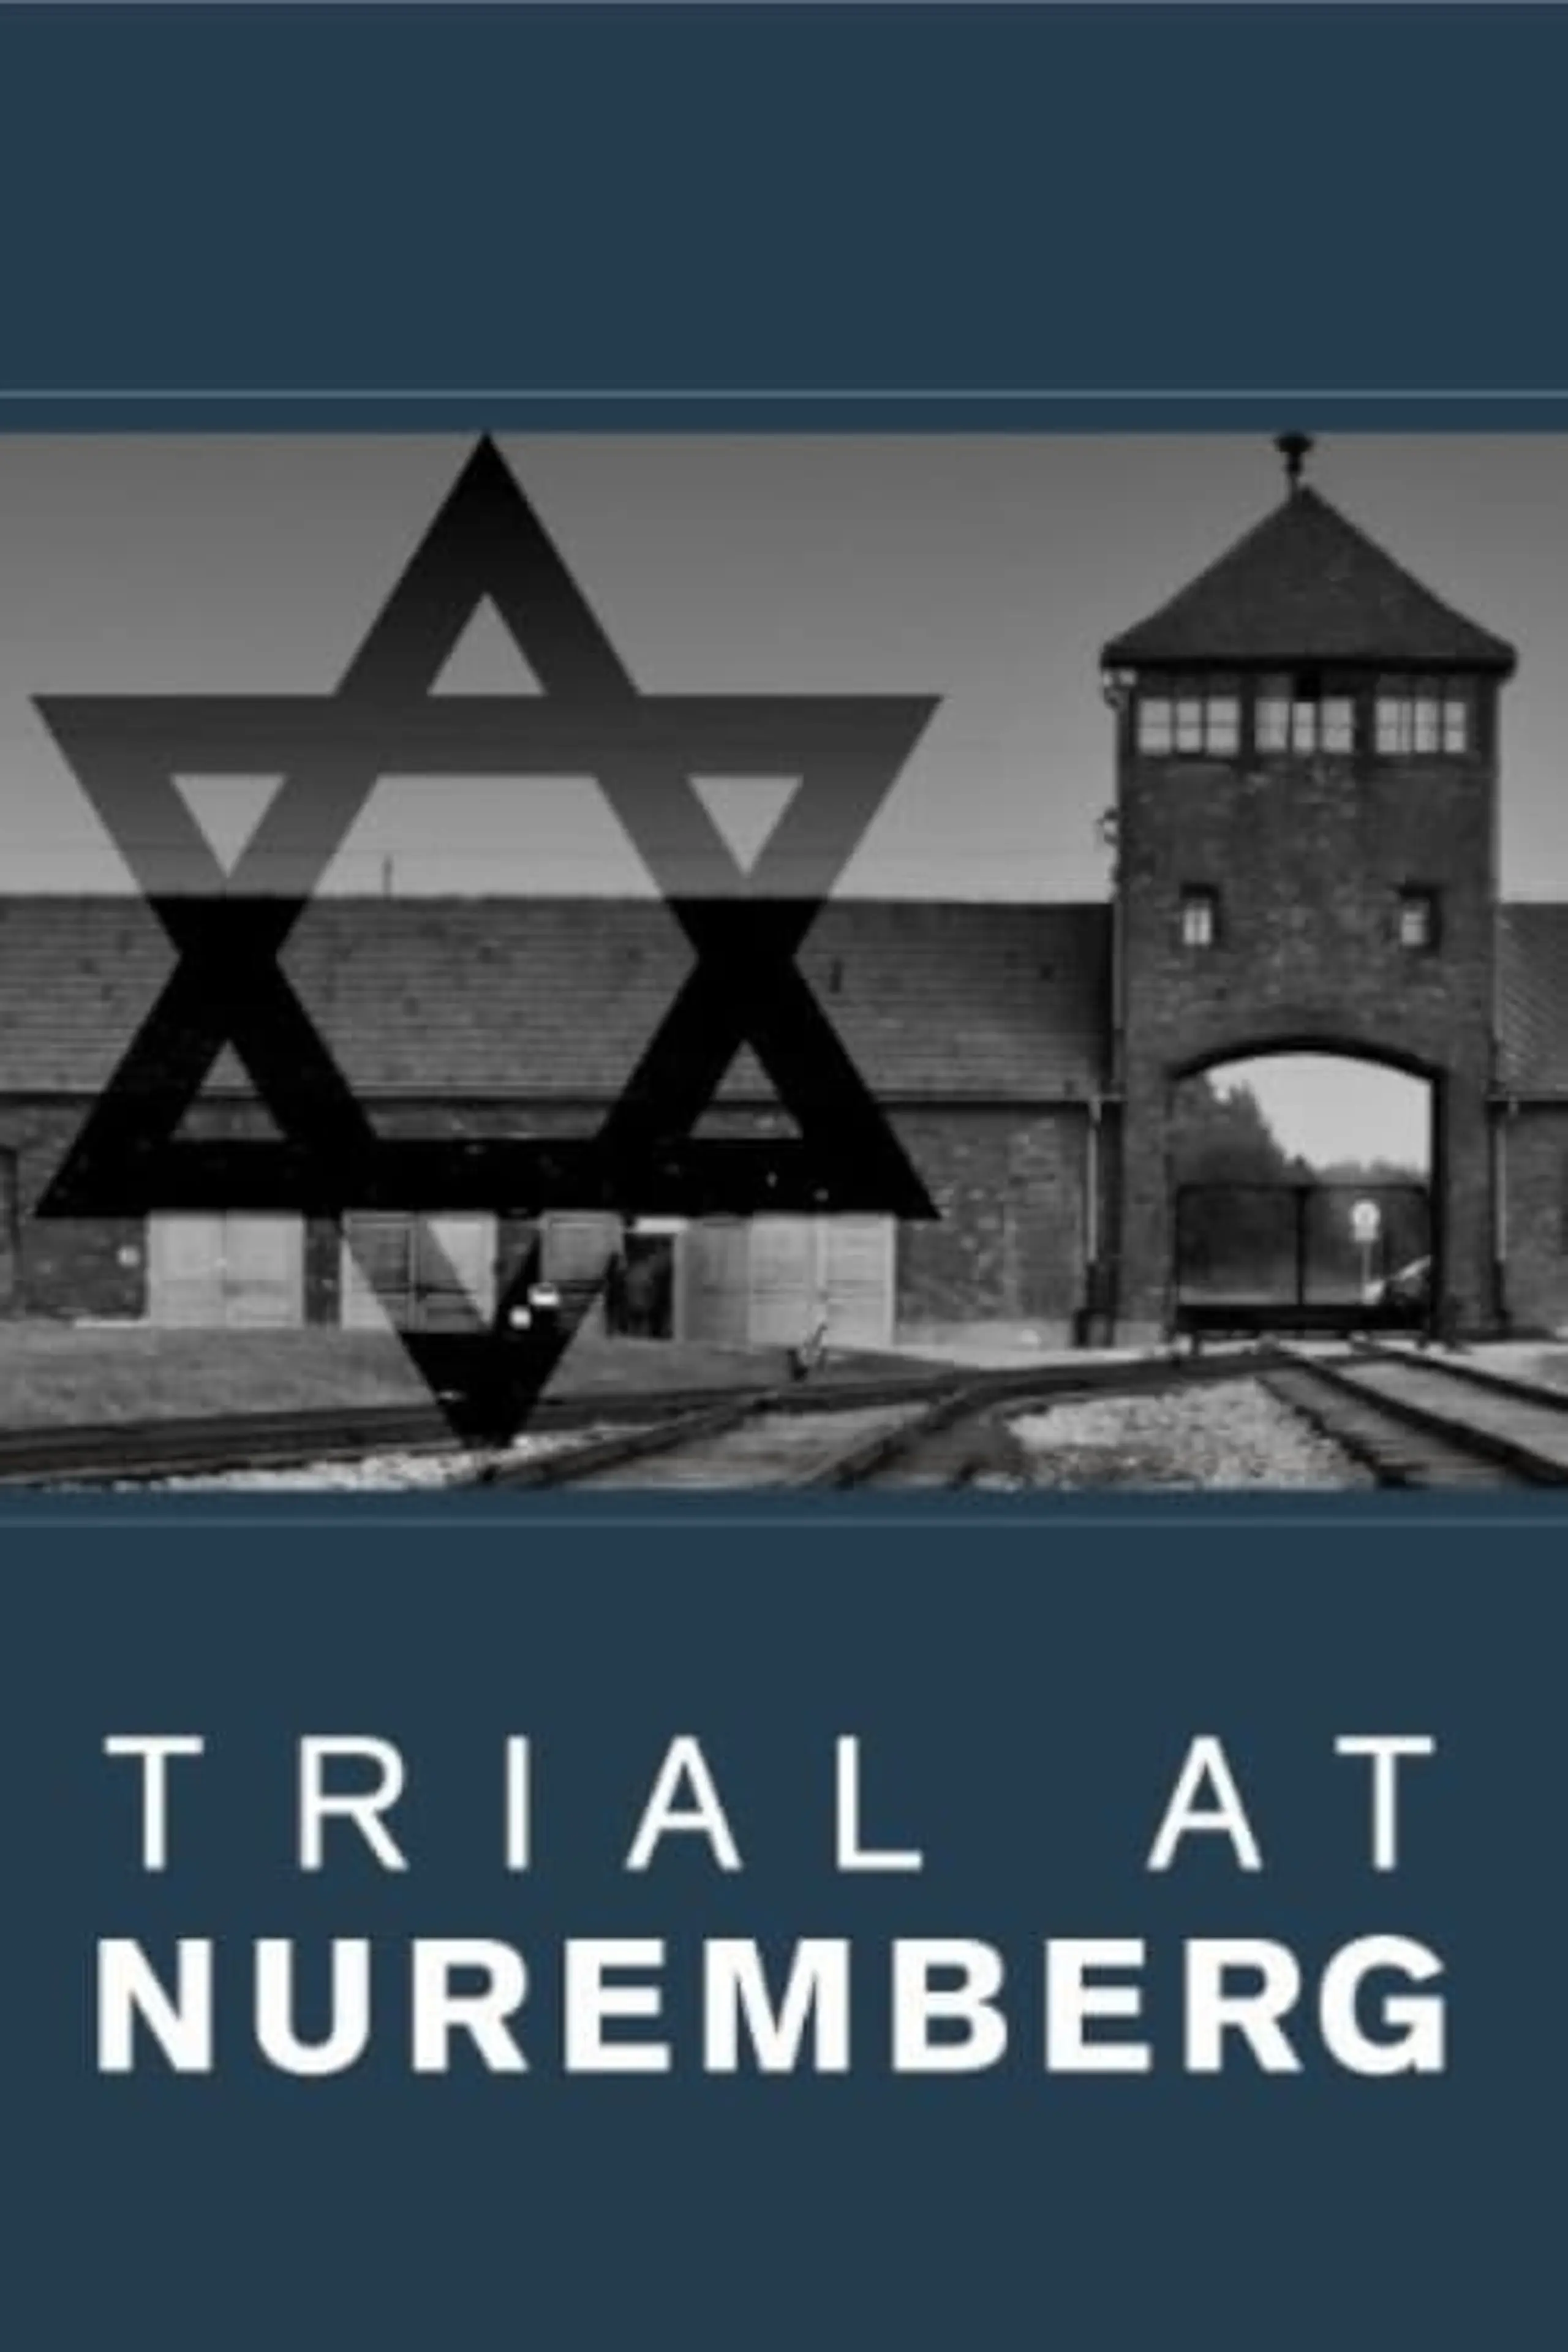 Trial at Nuremberg